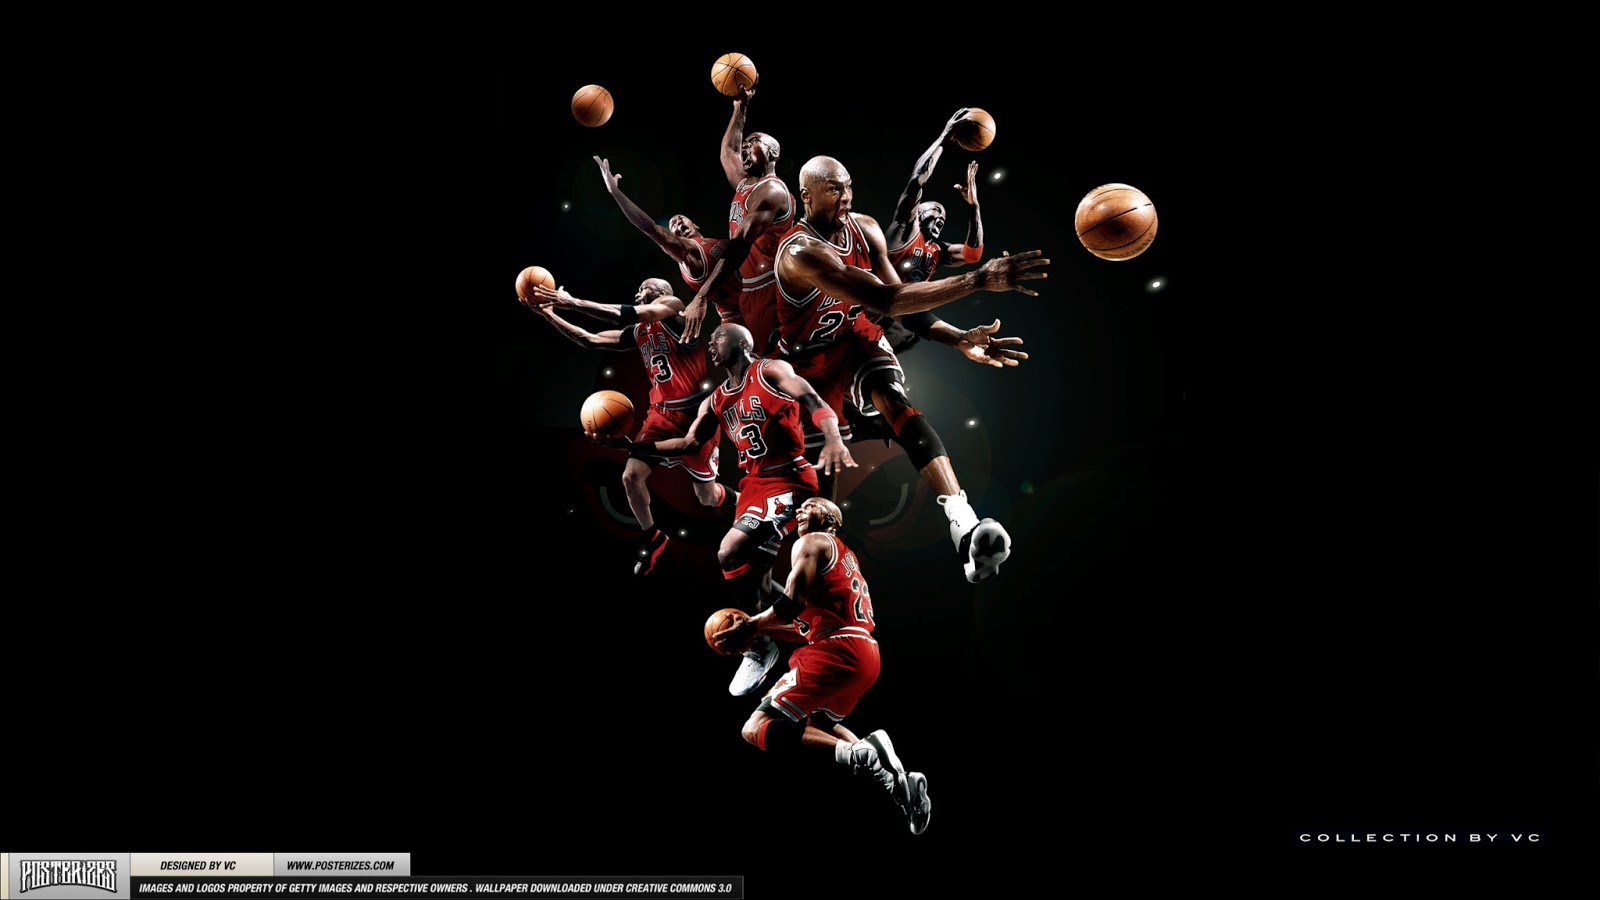 Michael Jordan The Shot Ing Gallery